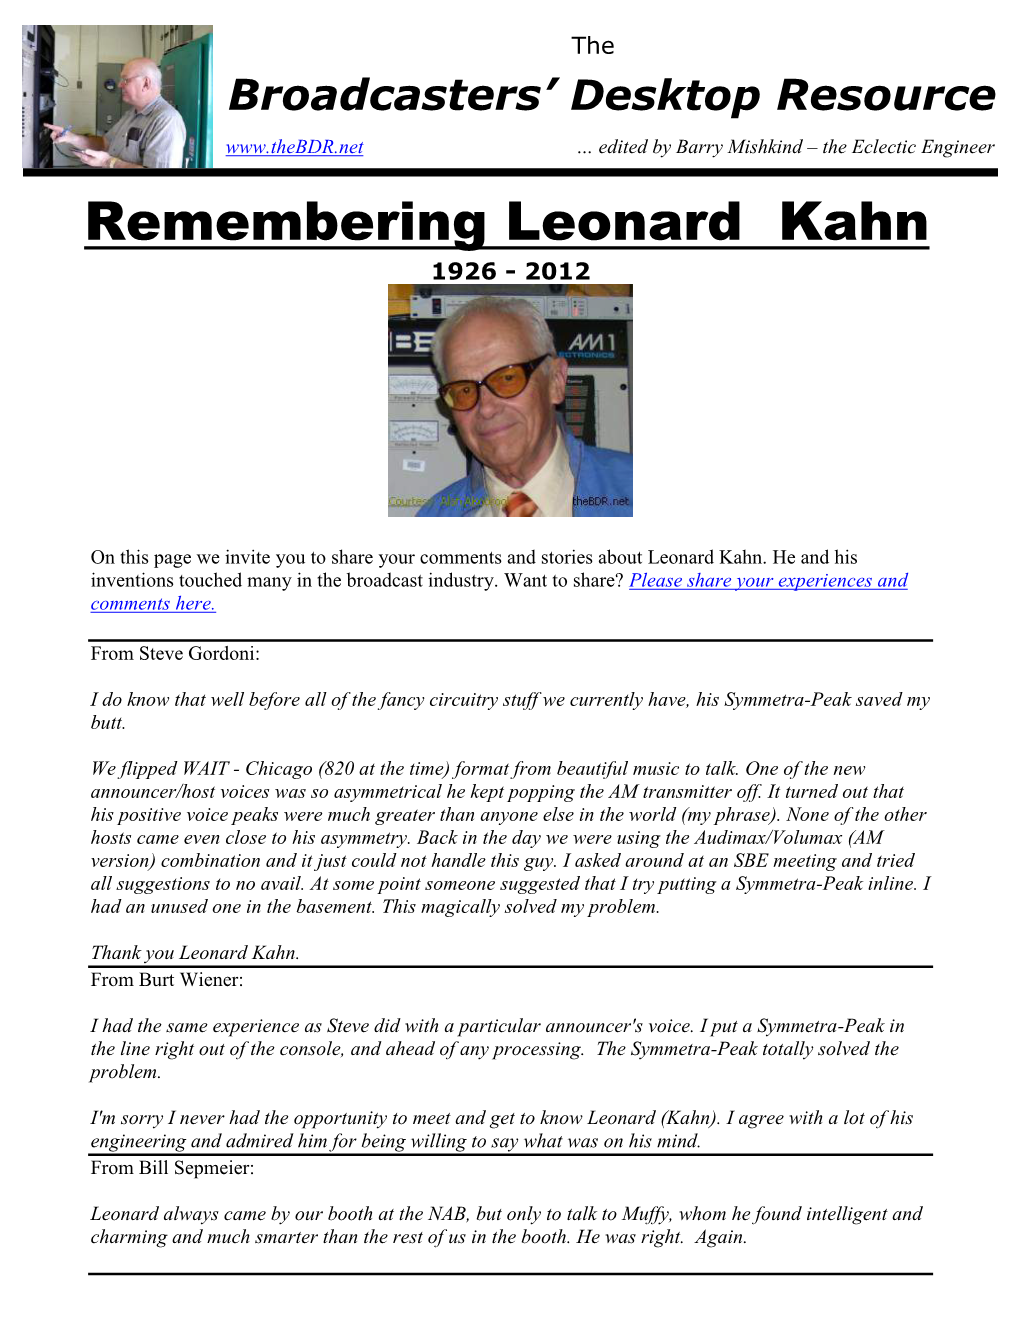 Remembering Leonard Kahn 1926 - 2012